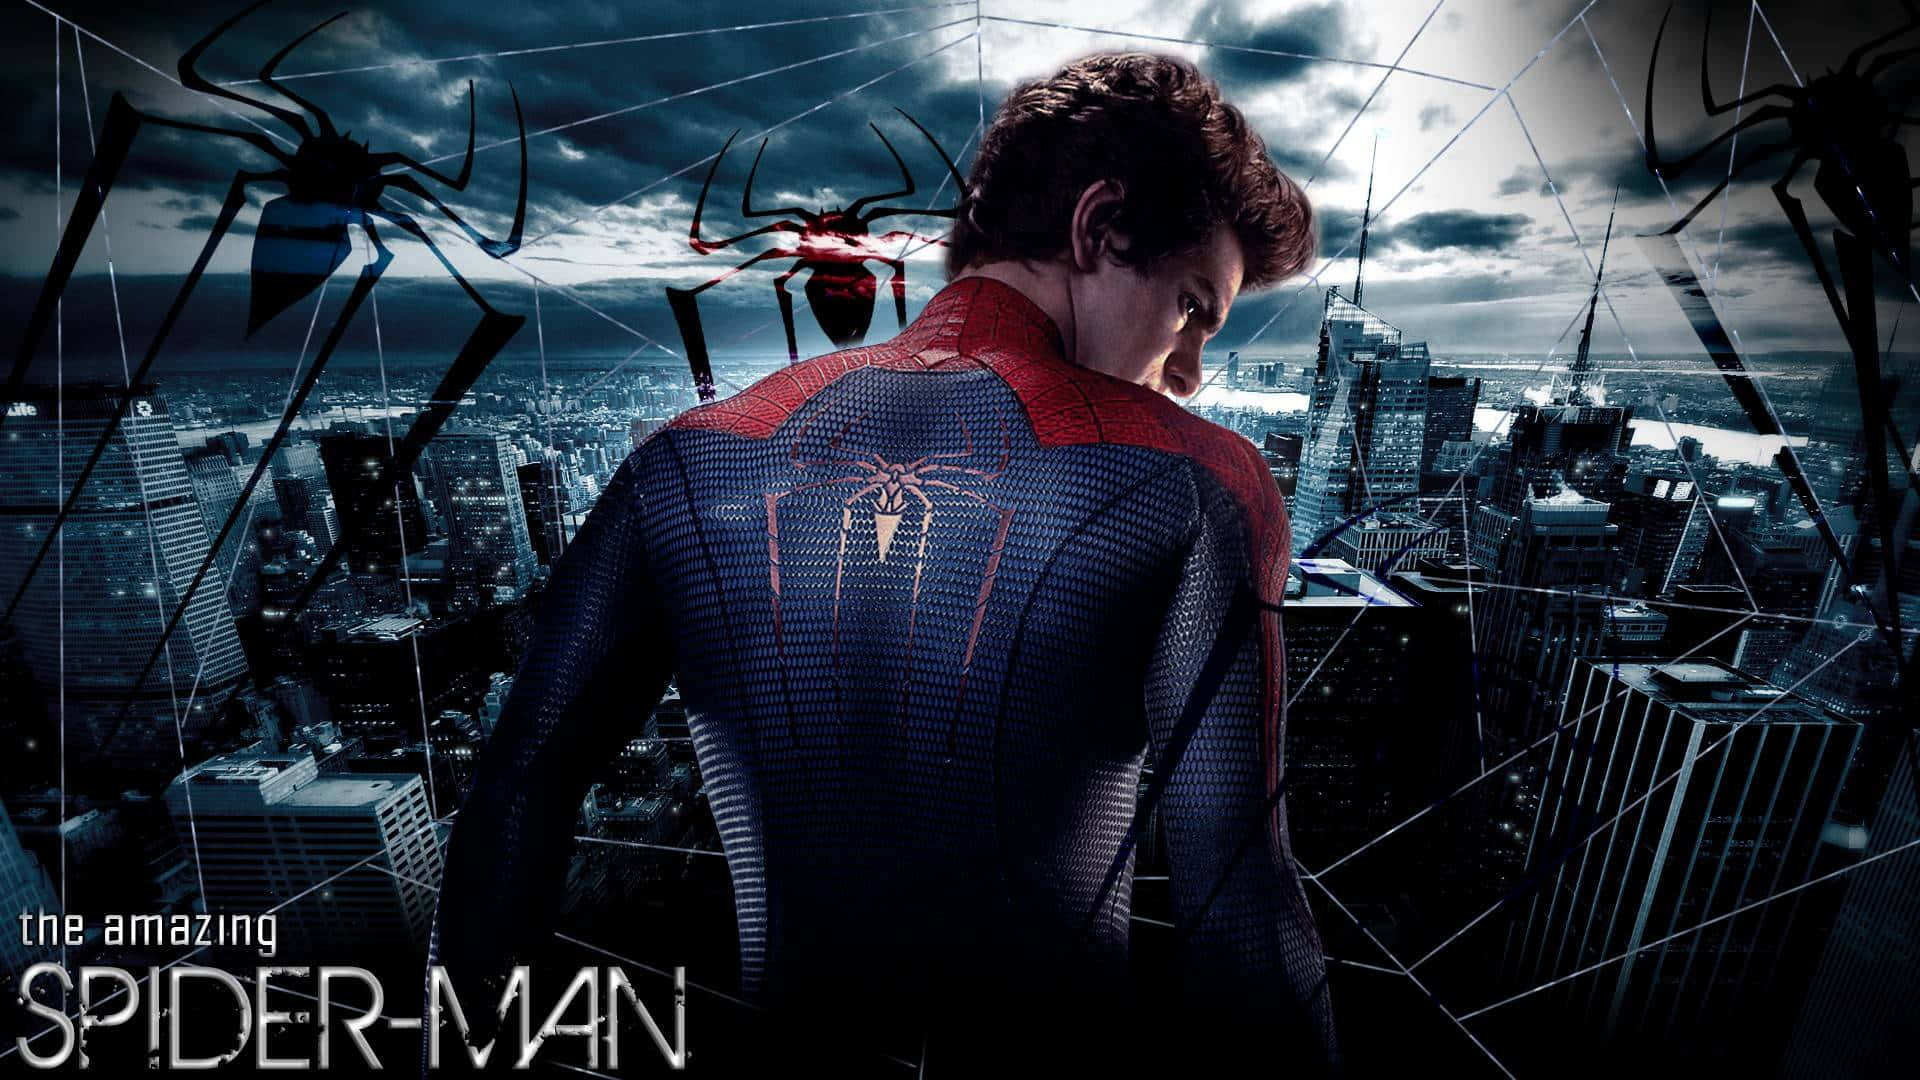 The Amazing Spider-man Swinging Between Skyscrapers Wallpaper